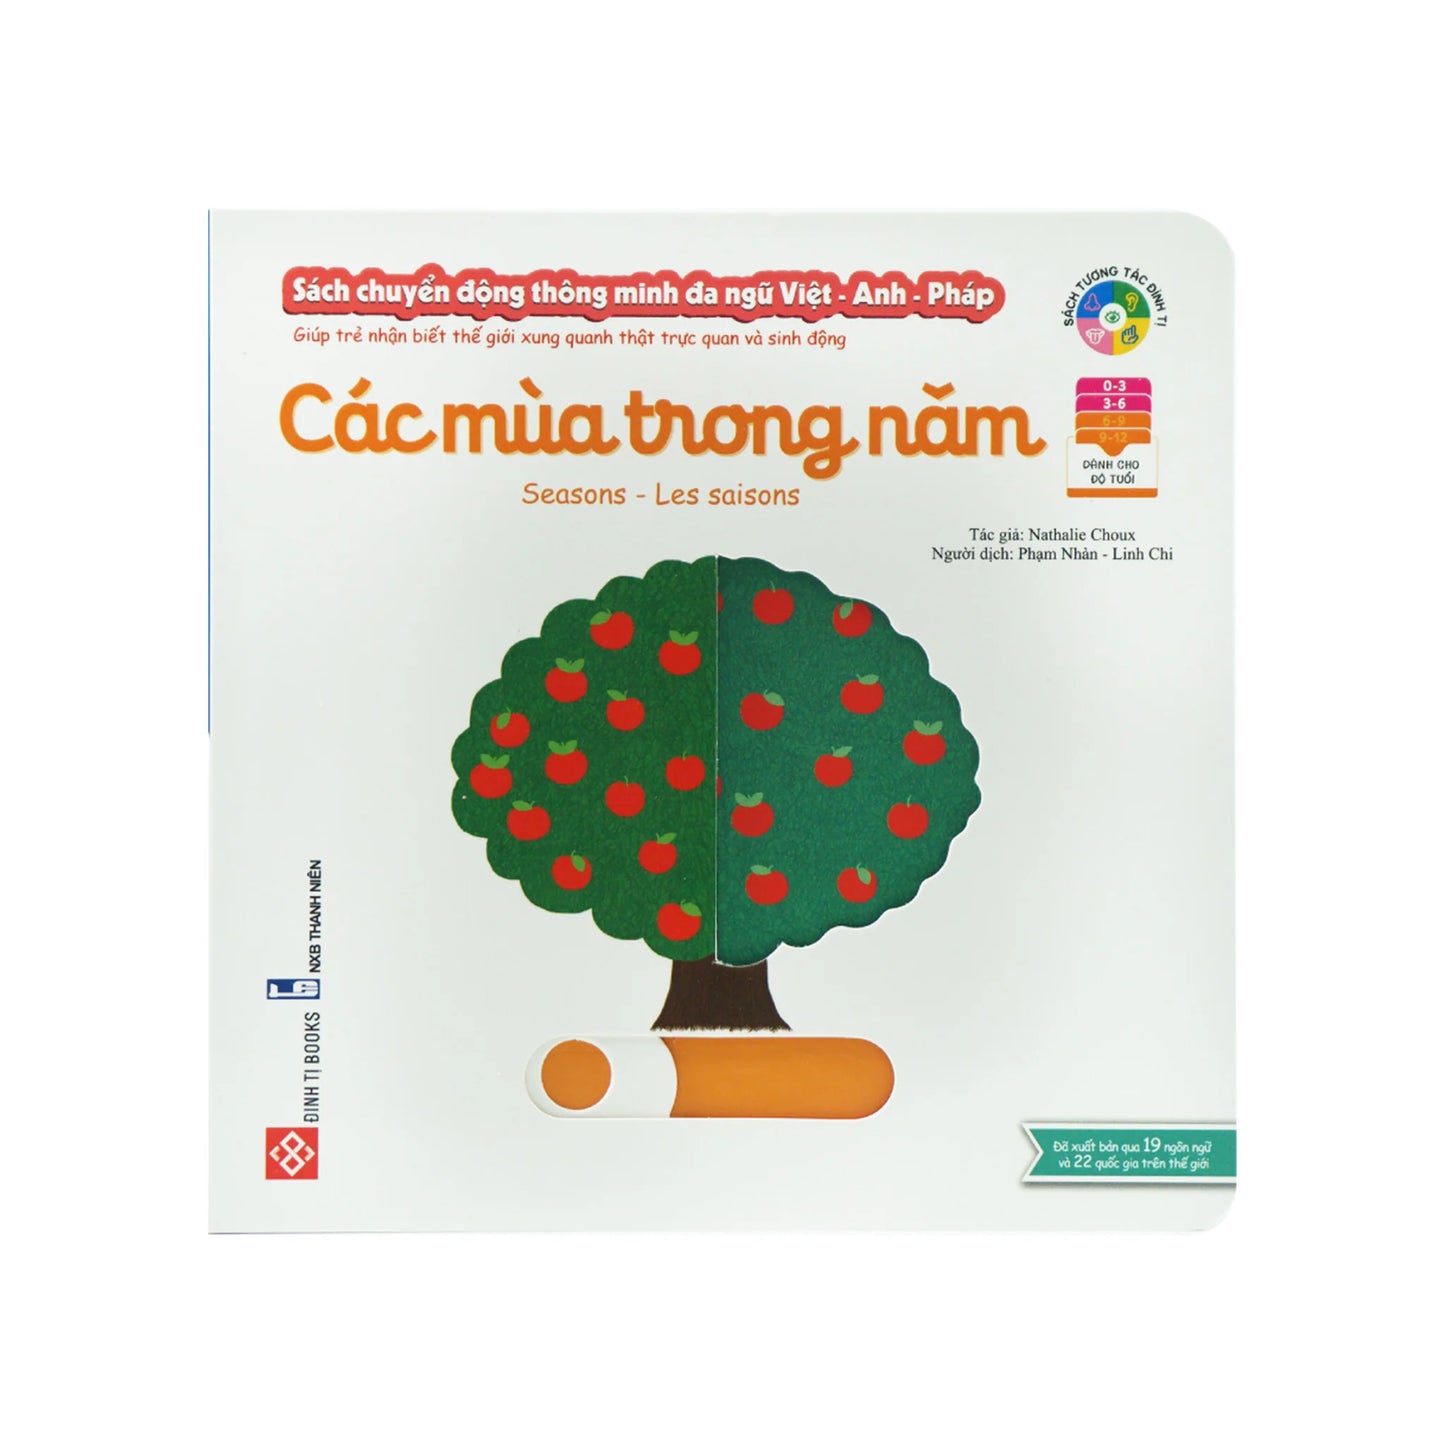 Sách chuyển động thông minh đa ngữ Việt - Anh - Pháp: Các mùa trong năm – Seasons – Les saisons - A Multilingual Board Book